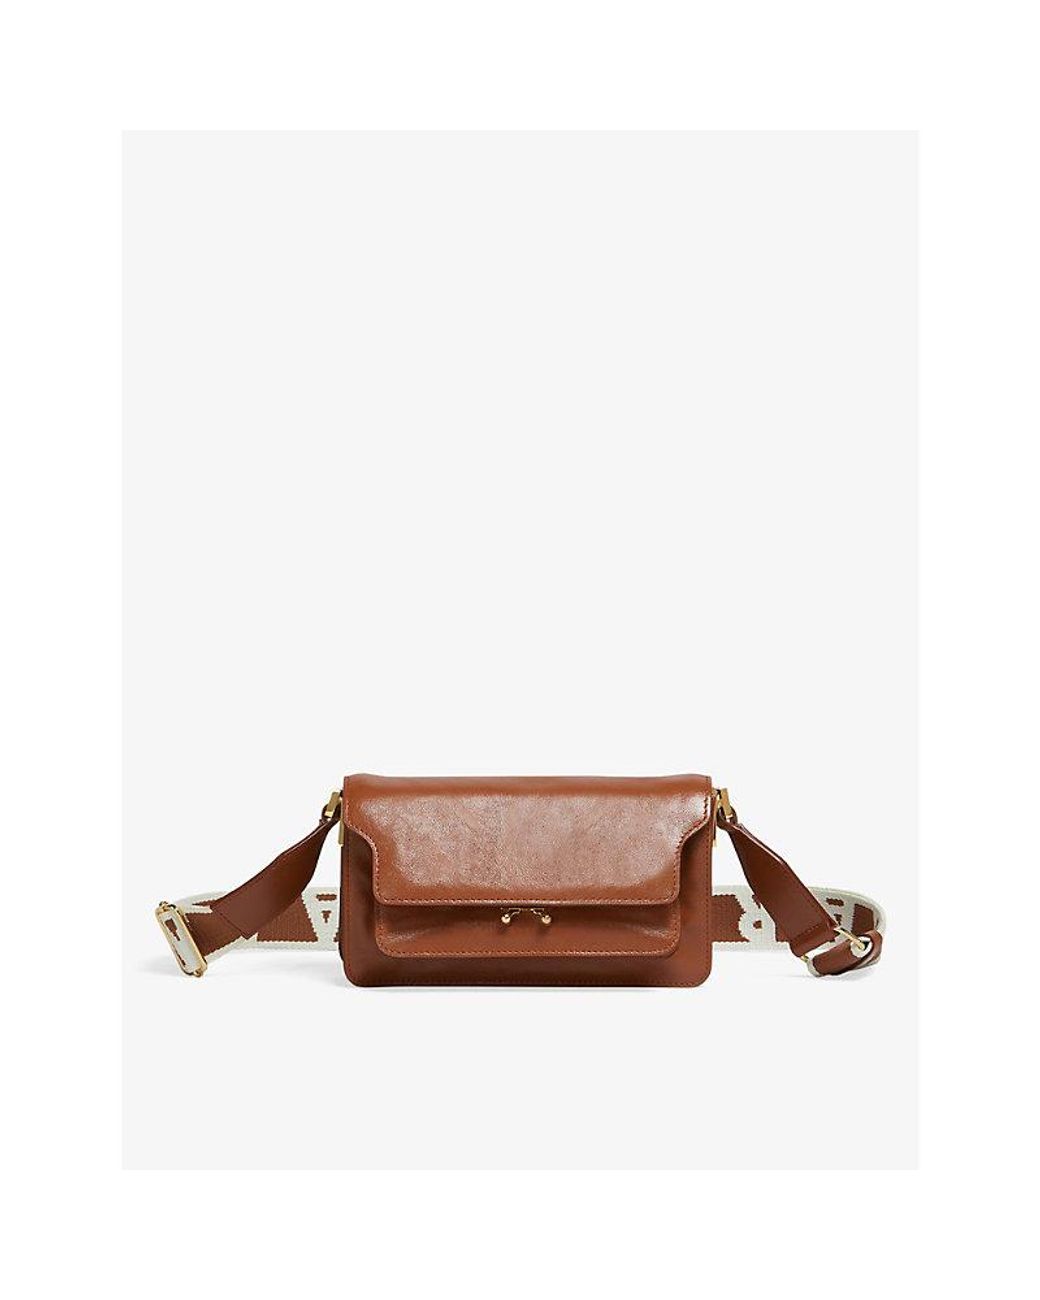 MARNI: Trunk bag in leather - Brown  Marni shoulder bag SBMP0121U0LV589  online at